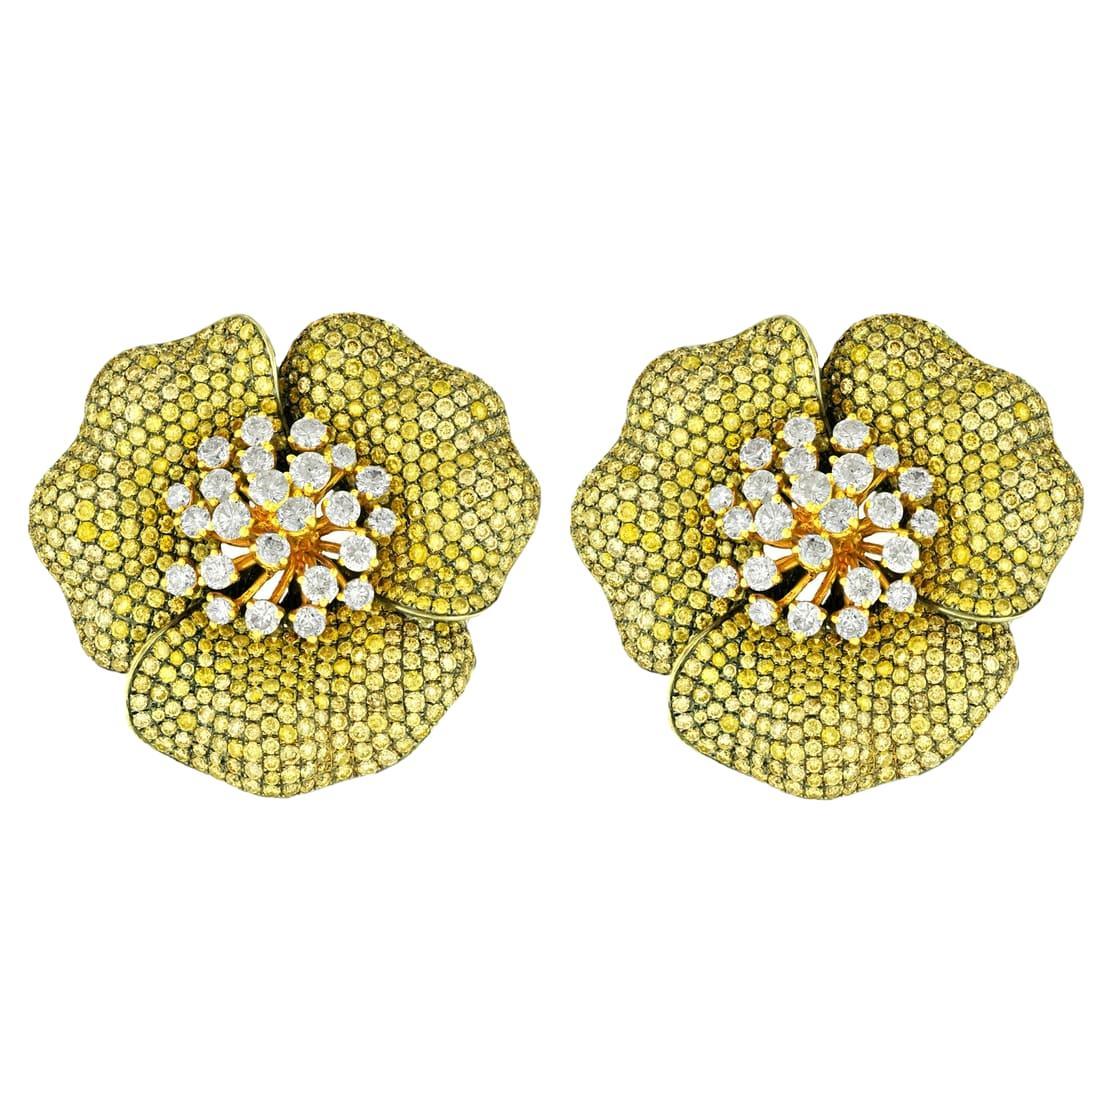 Diana M. 19,00cts Diamond Flower Fashion Ohrringe in 18Kt Weißgold 